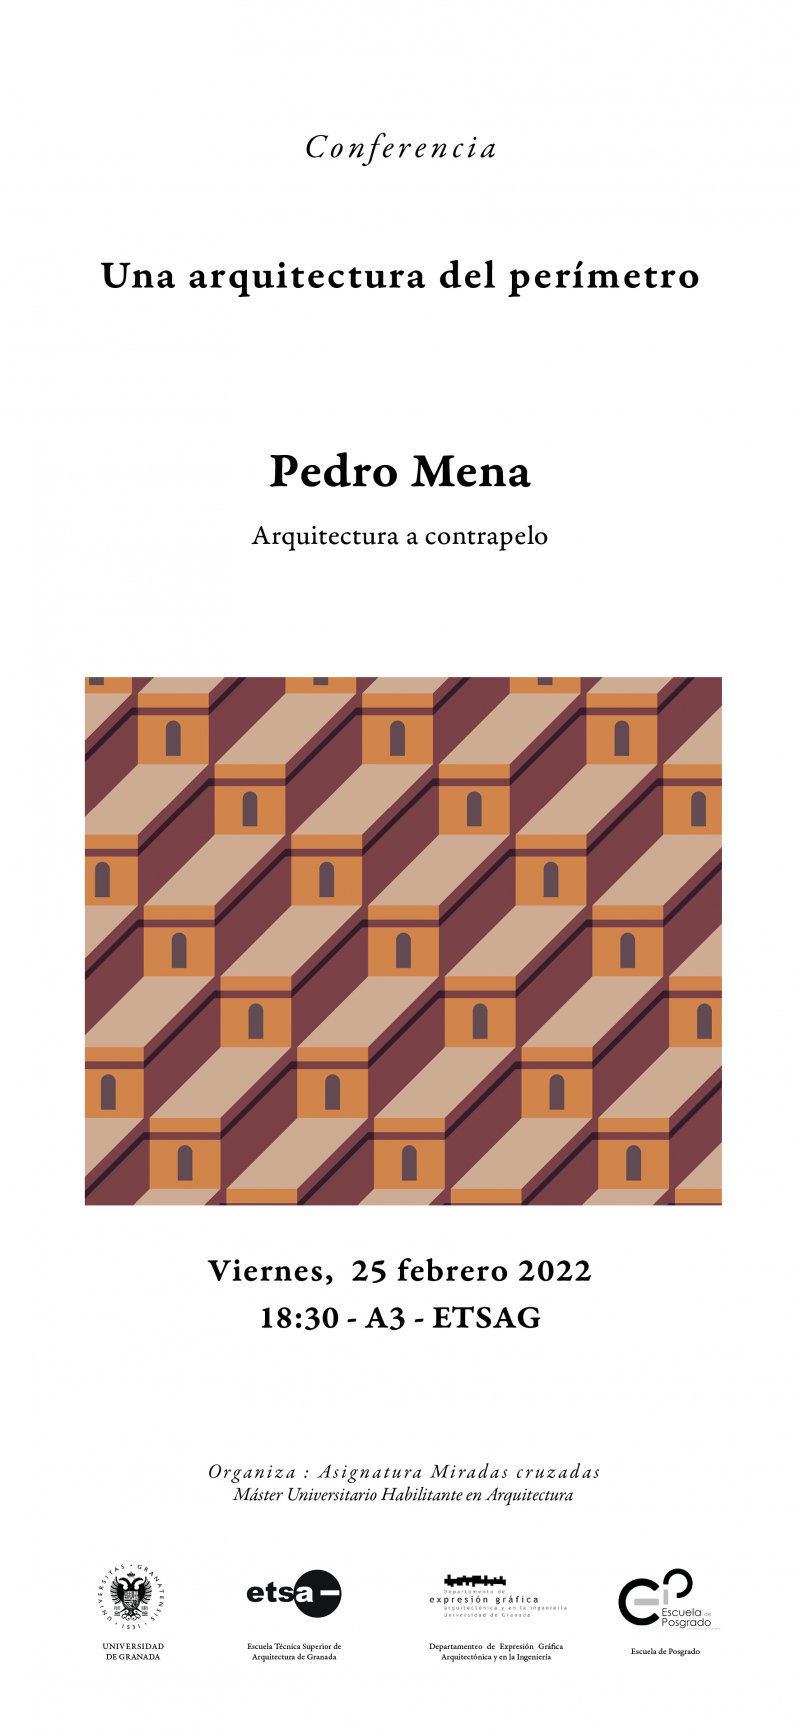 Cartel de la Conferencia de Pedro Mena